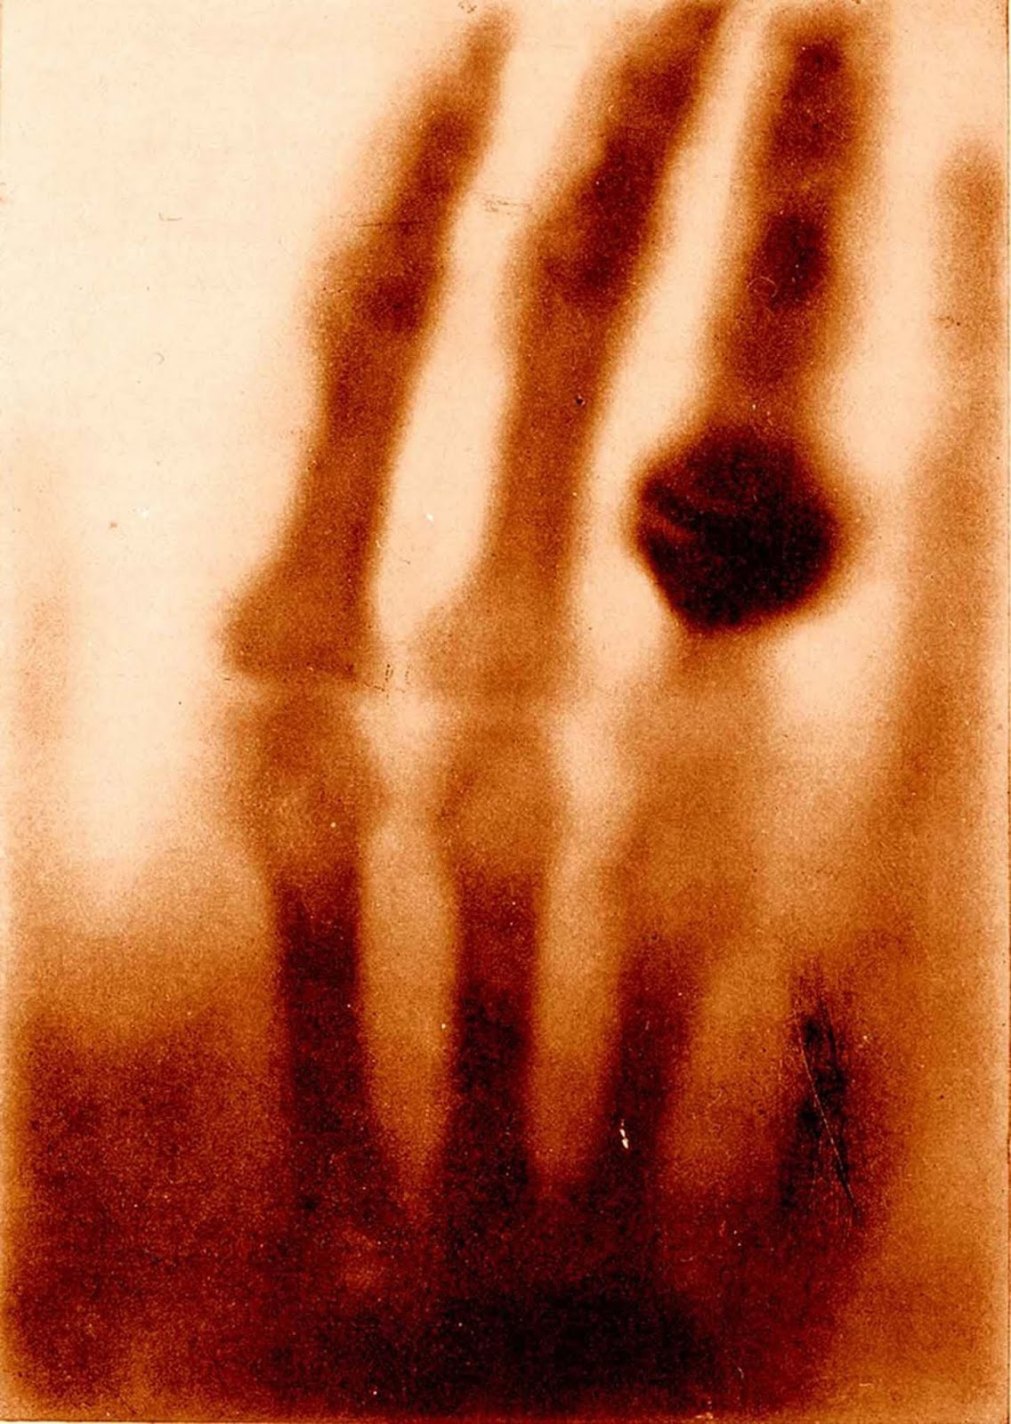 The Hand of Mrs. Wilhelm Röntgen, Wilhelm Conrad Röntgen, 1895